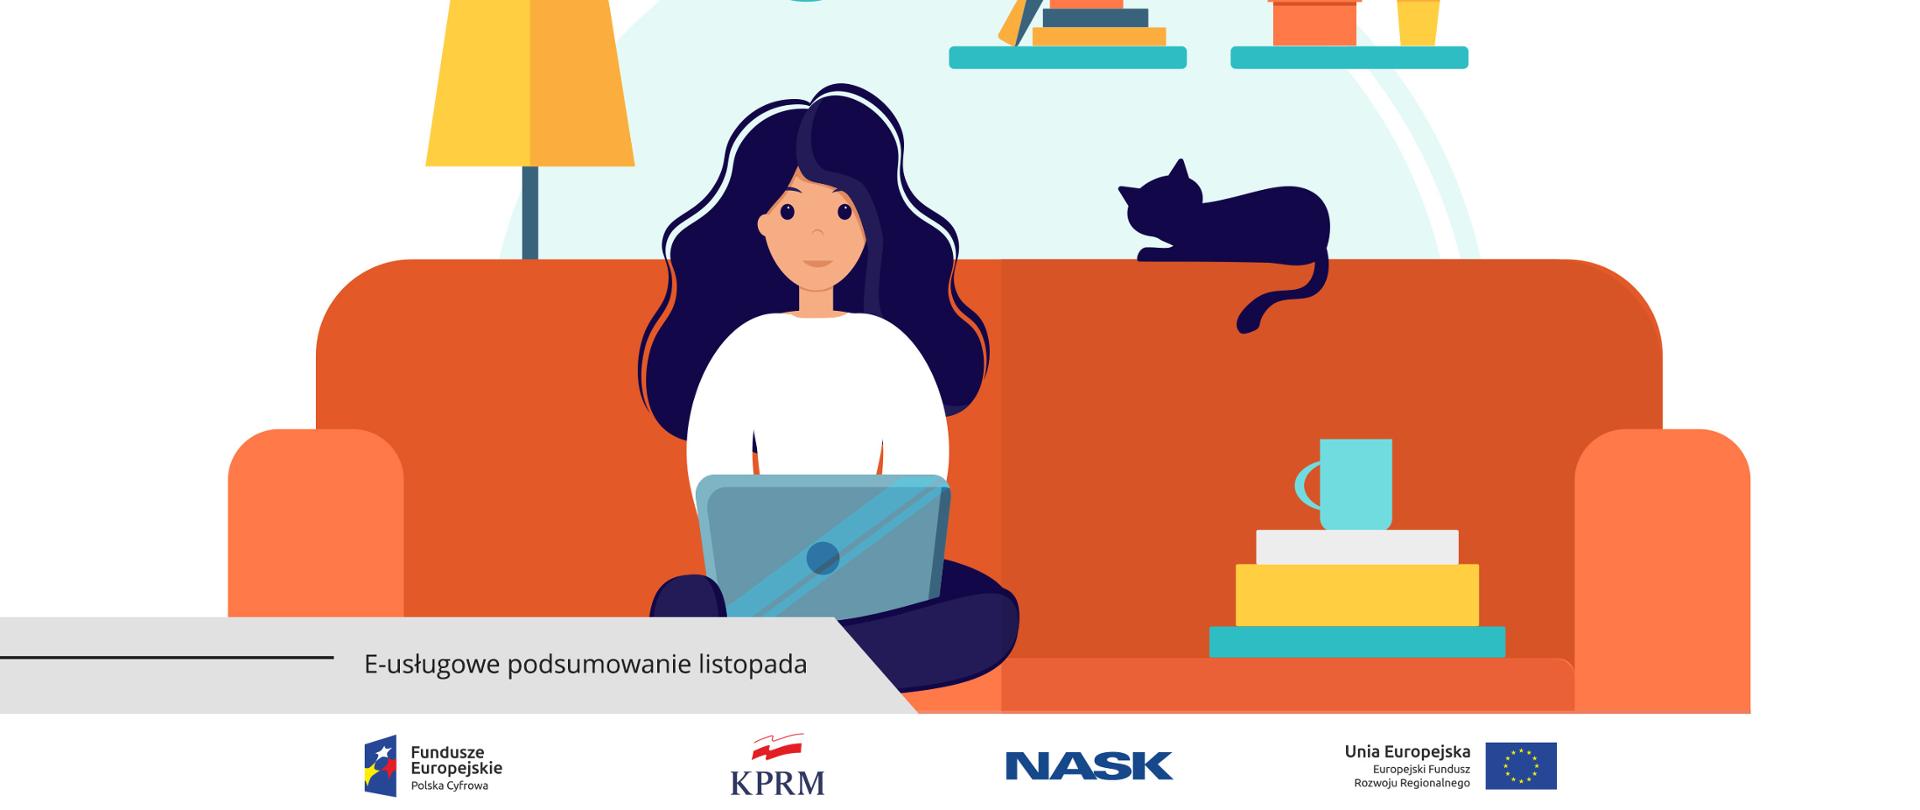 Grafika wektorowa - kobieta siedzi na kanapie, na kolanach trzyma laptopa. Obok niej (po jej lewej stronie) na kanapie leżą ksiażki, na których stoi kubek. Z tej samej strony - na oparciu kanapy siedzi kot.